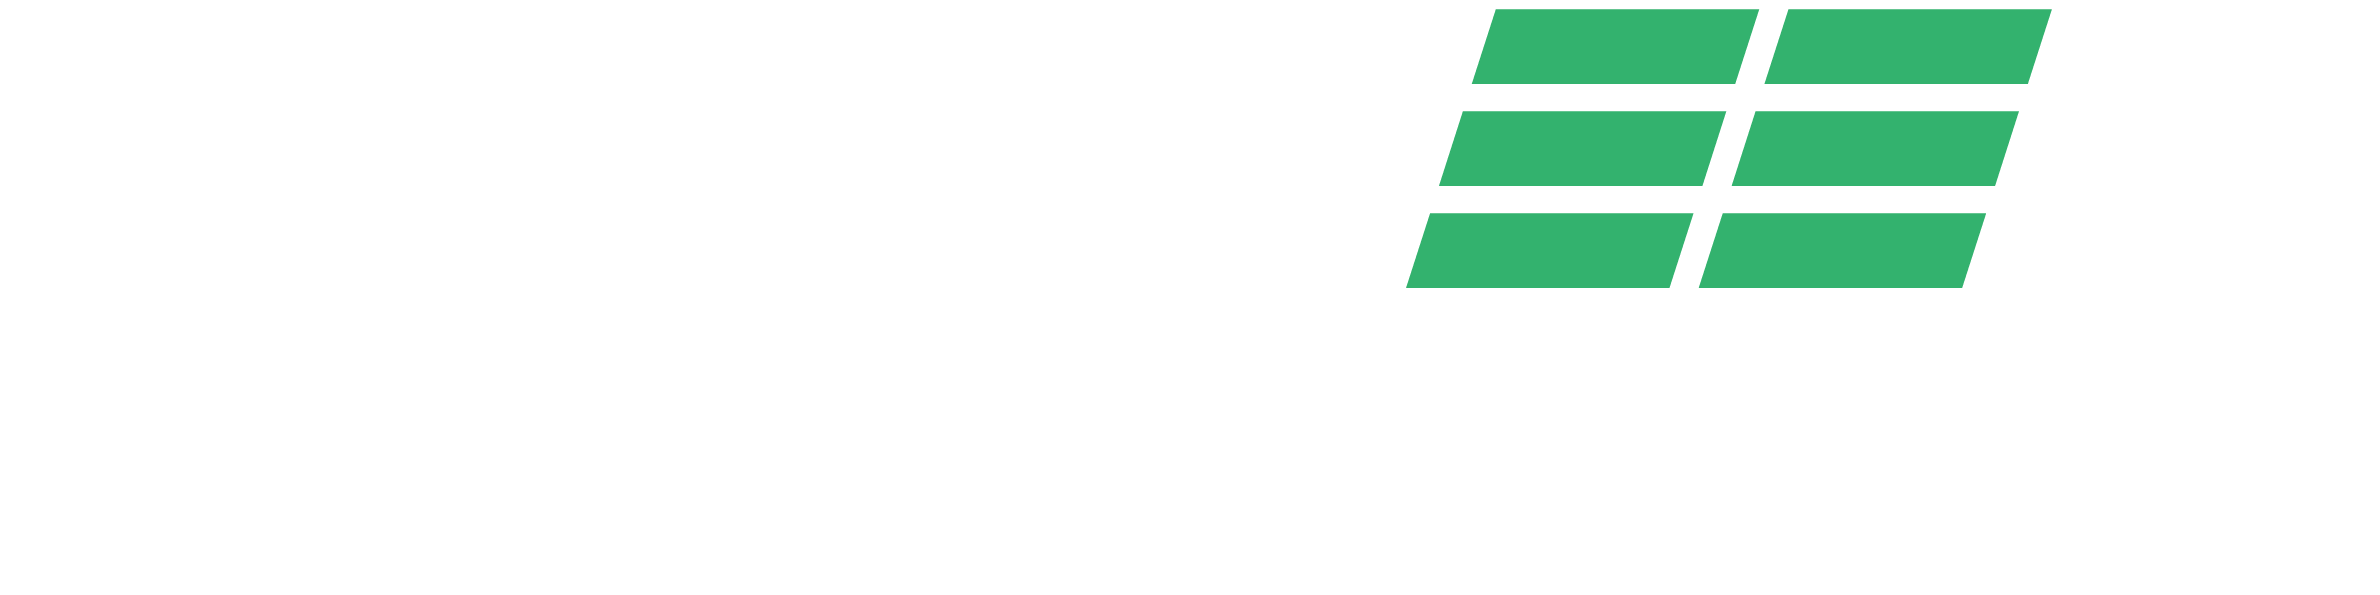 Go Green Logistics